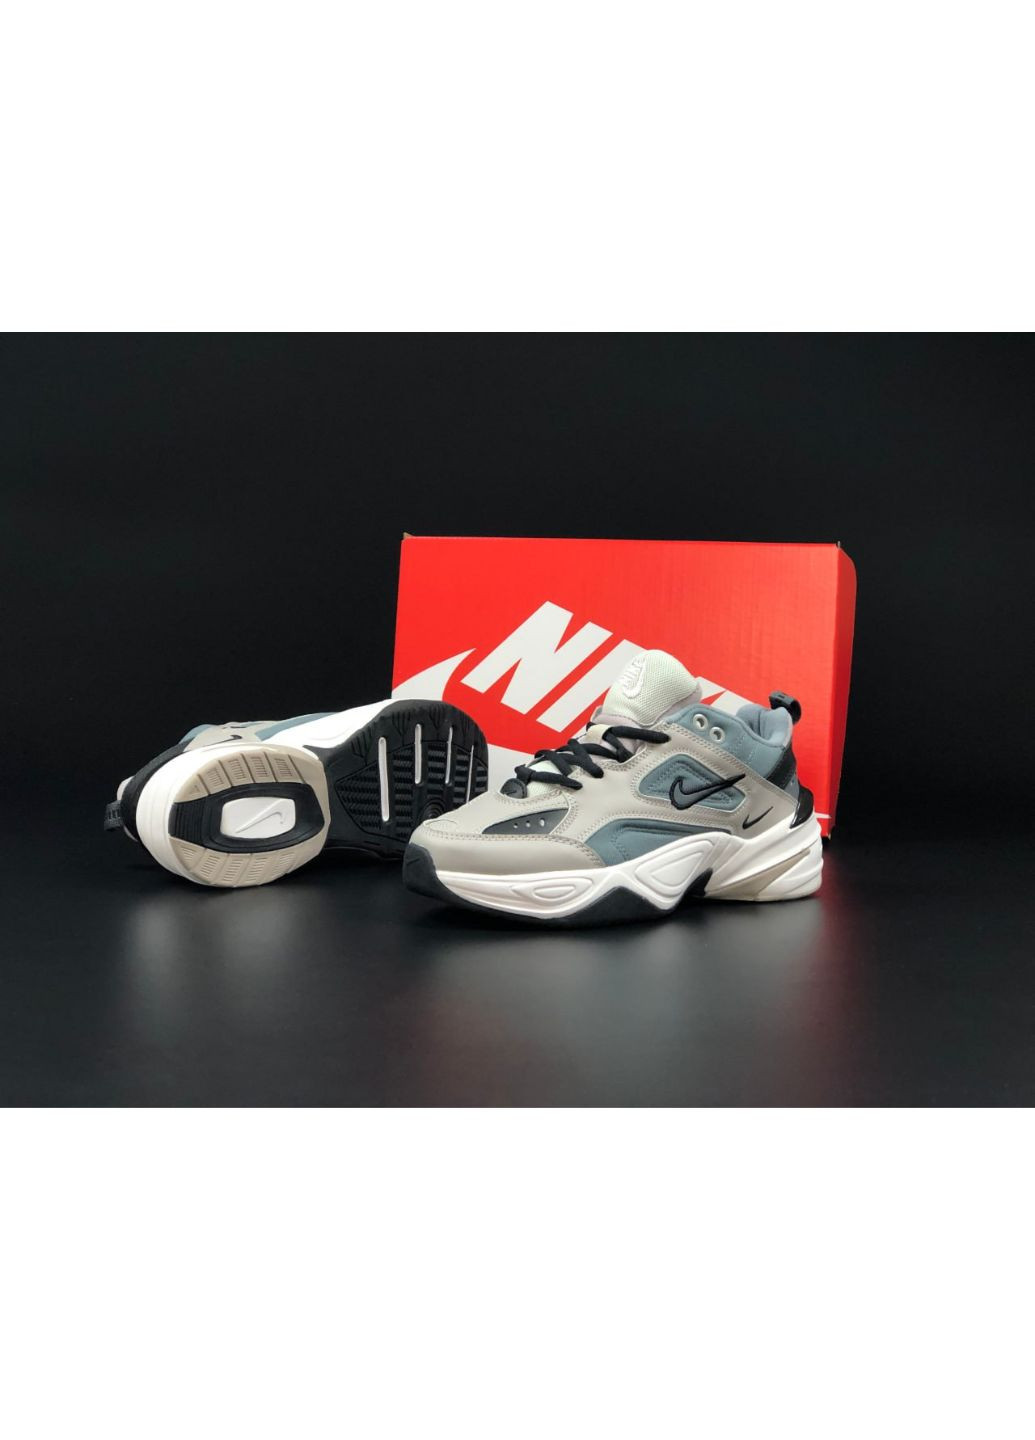 Сірі осінні жіночі кросівки сірі «no name» Nike M2k Tekno